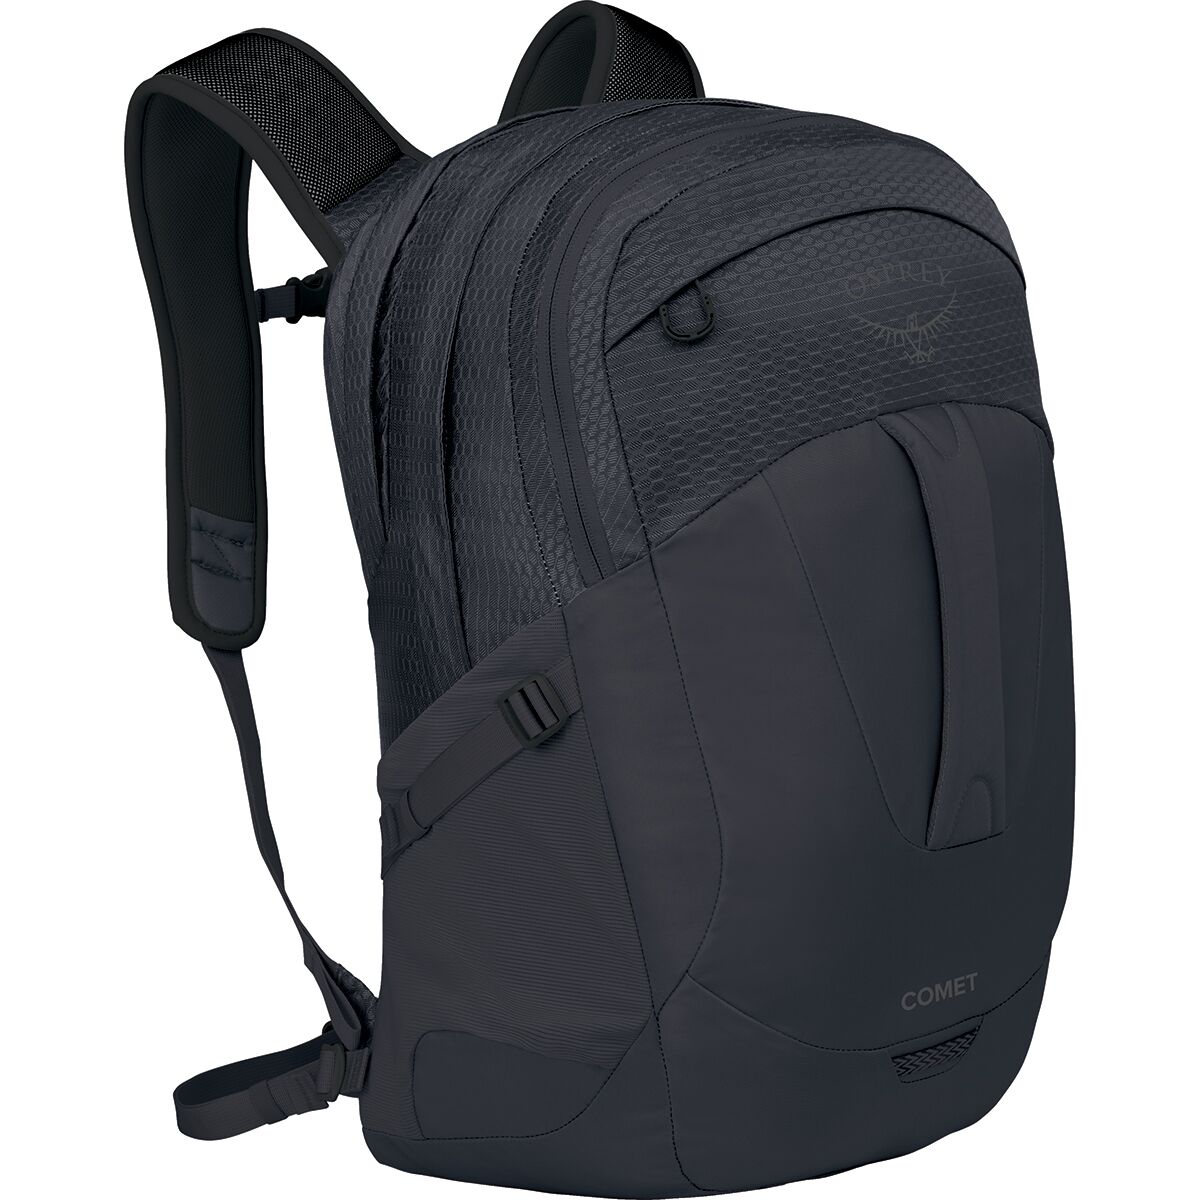 Osprey Packs Comet 30L Backpack